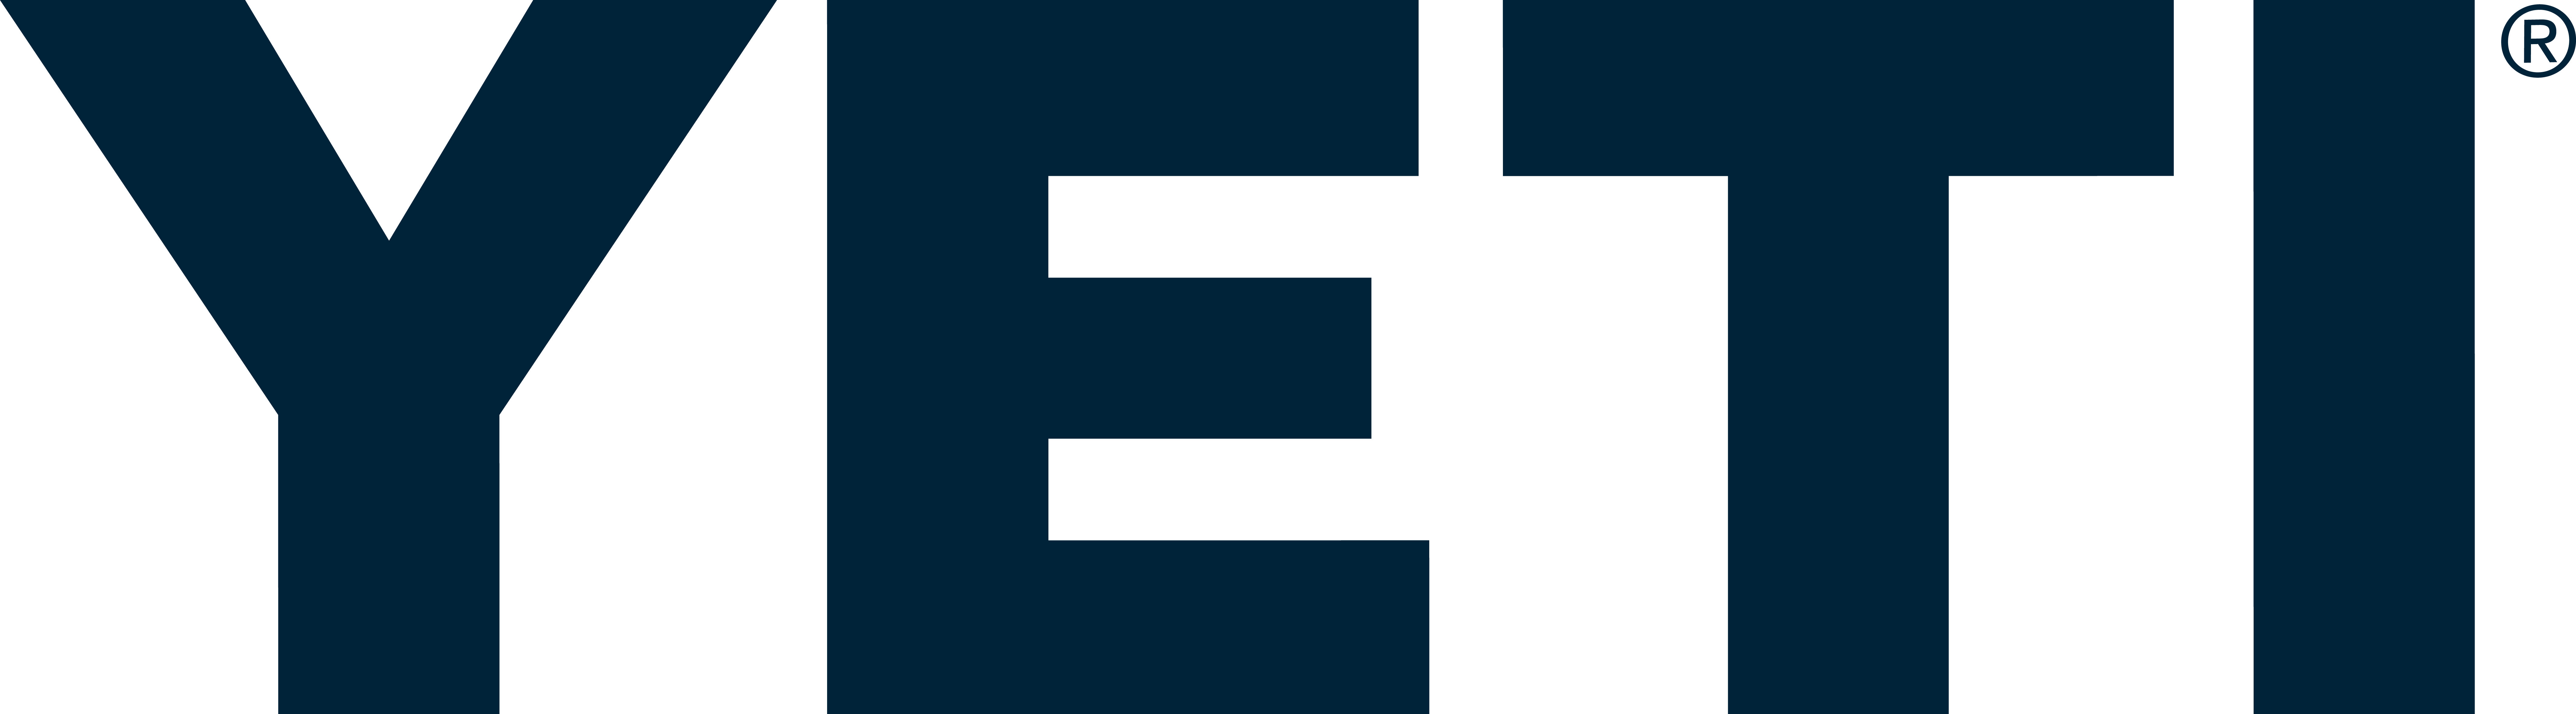 YETI Logo Blue (2)